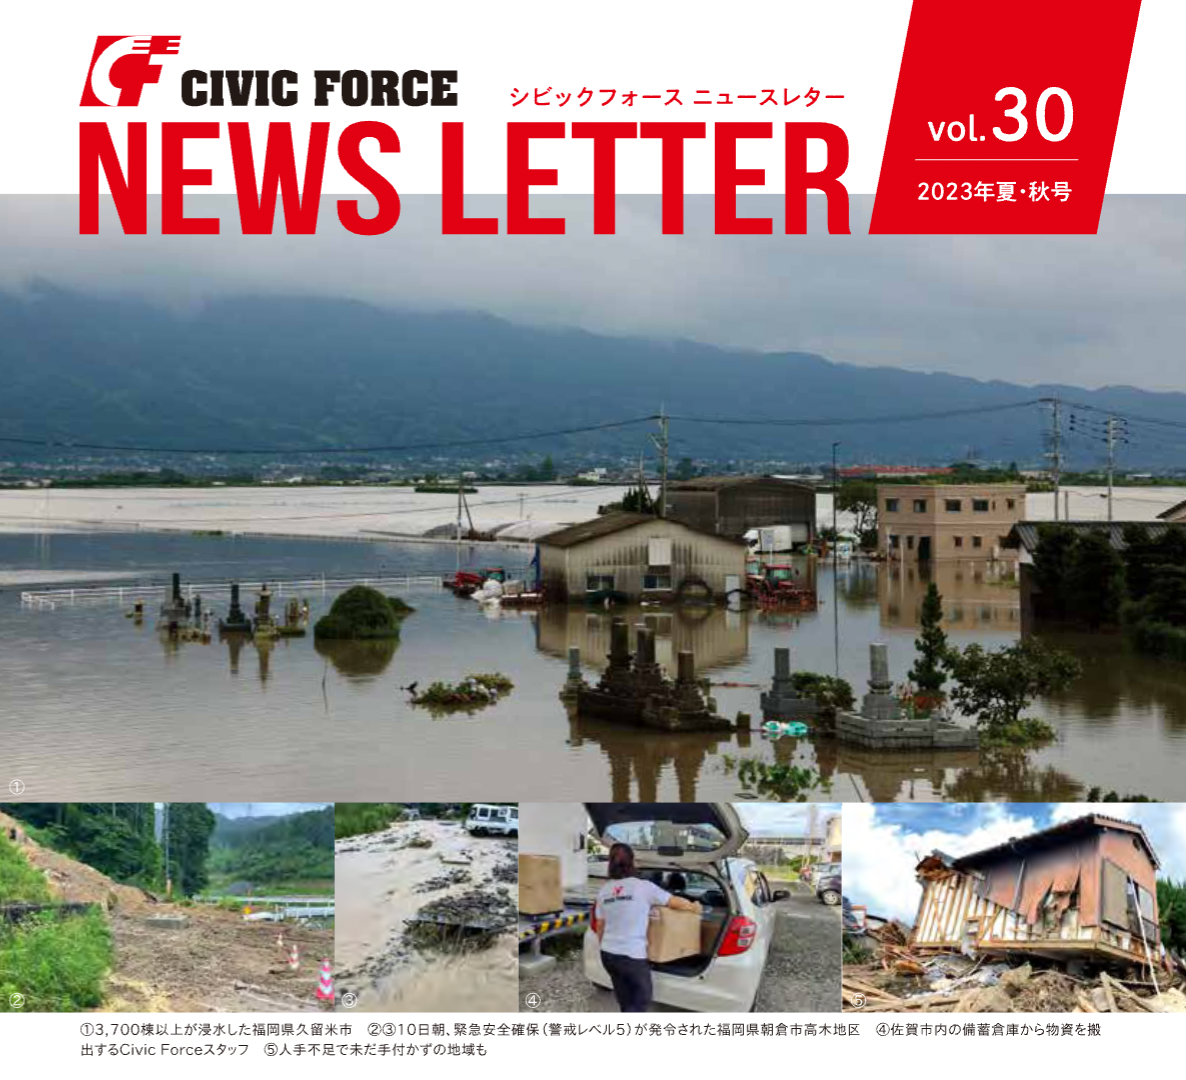 ニュースレターVol.30 発行　ー7月大雨被災地支援